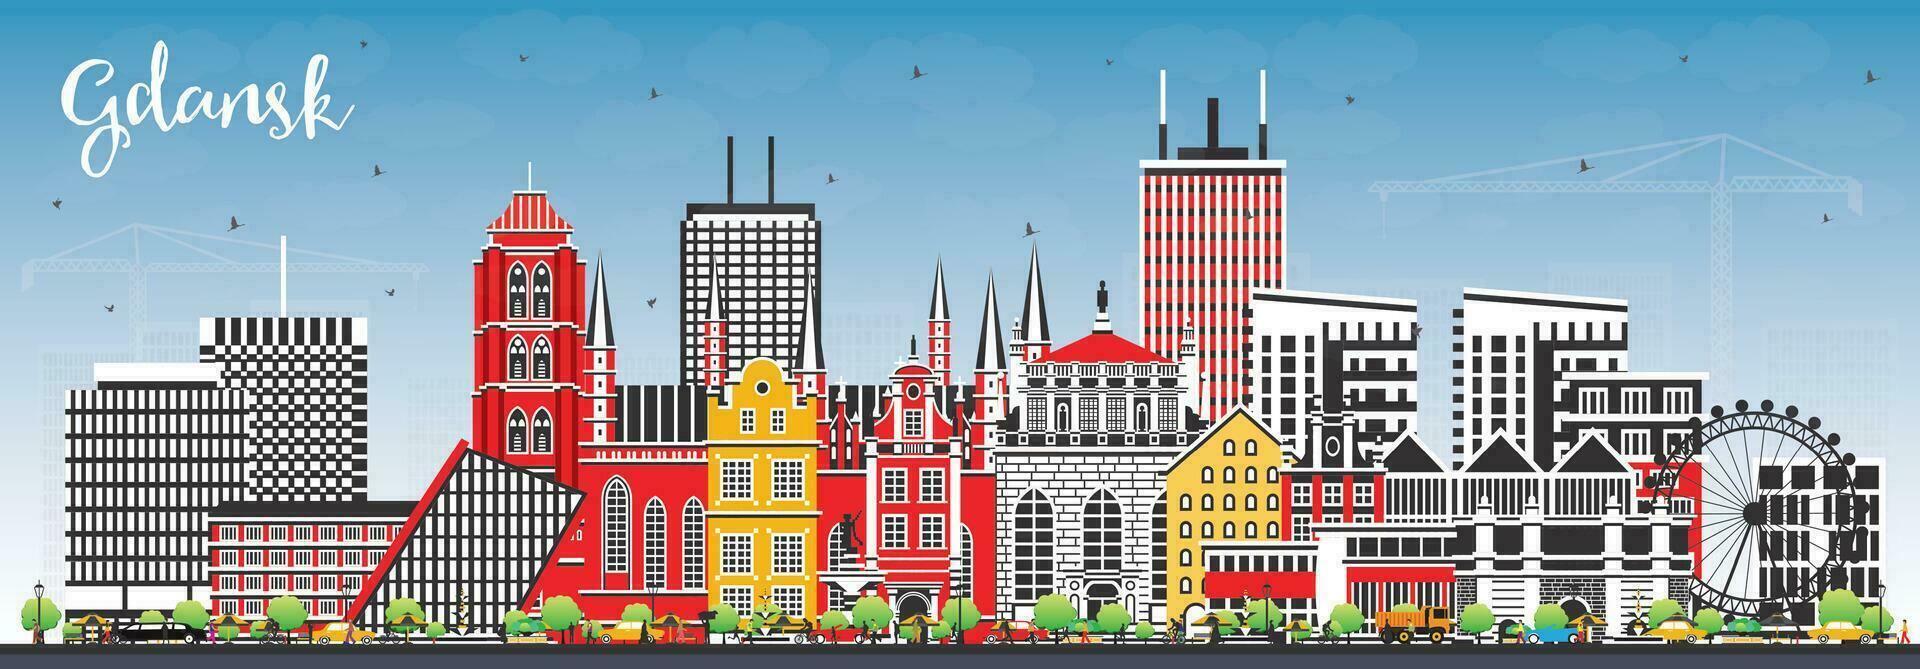 gdansk Polen stad horizon met kleur gebouwen en blauw lucht. gdansk stadsgezicht met oriëntatiepunten. bedrijf reizen en toerisme concept met modern en historisch architectuur. vector